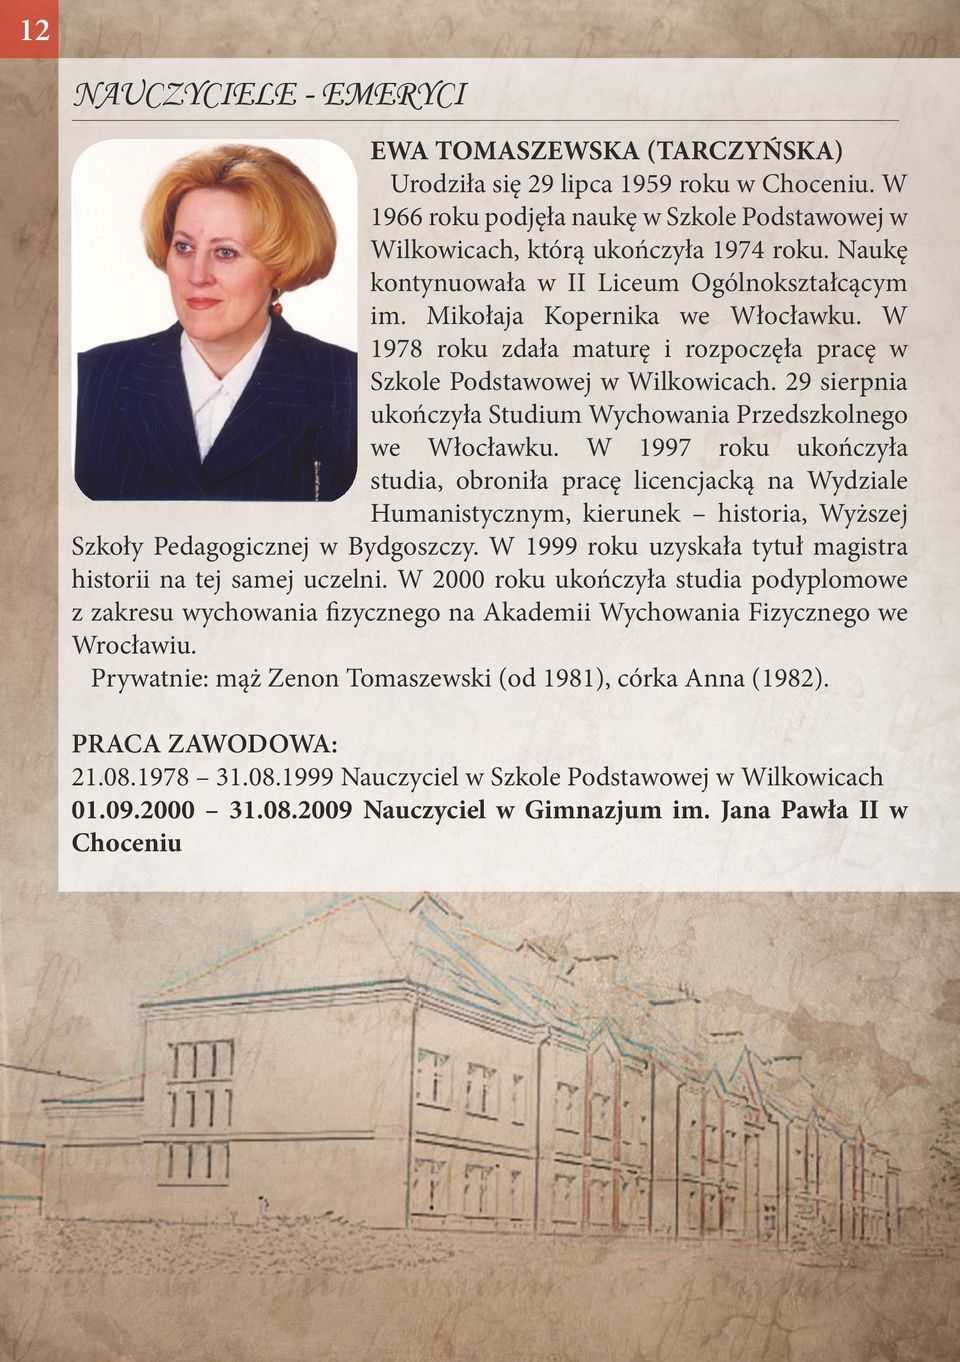 29 sierpnia ukończyła Studium Wychowania Przedszkolnego we Włocławku.